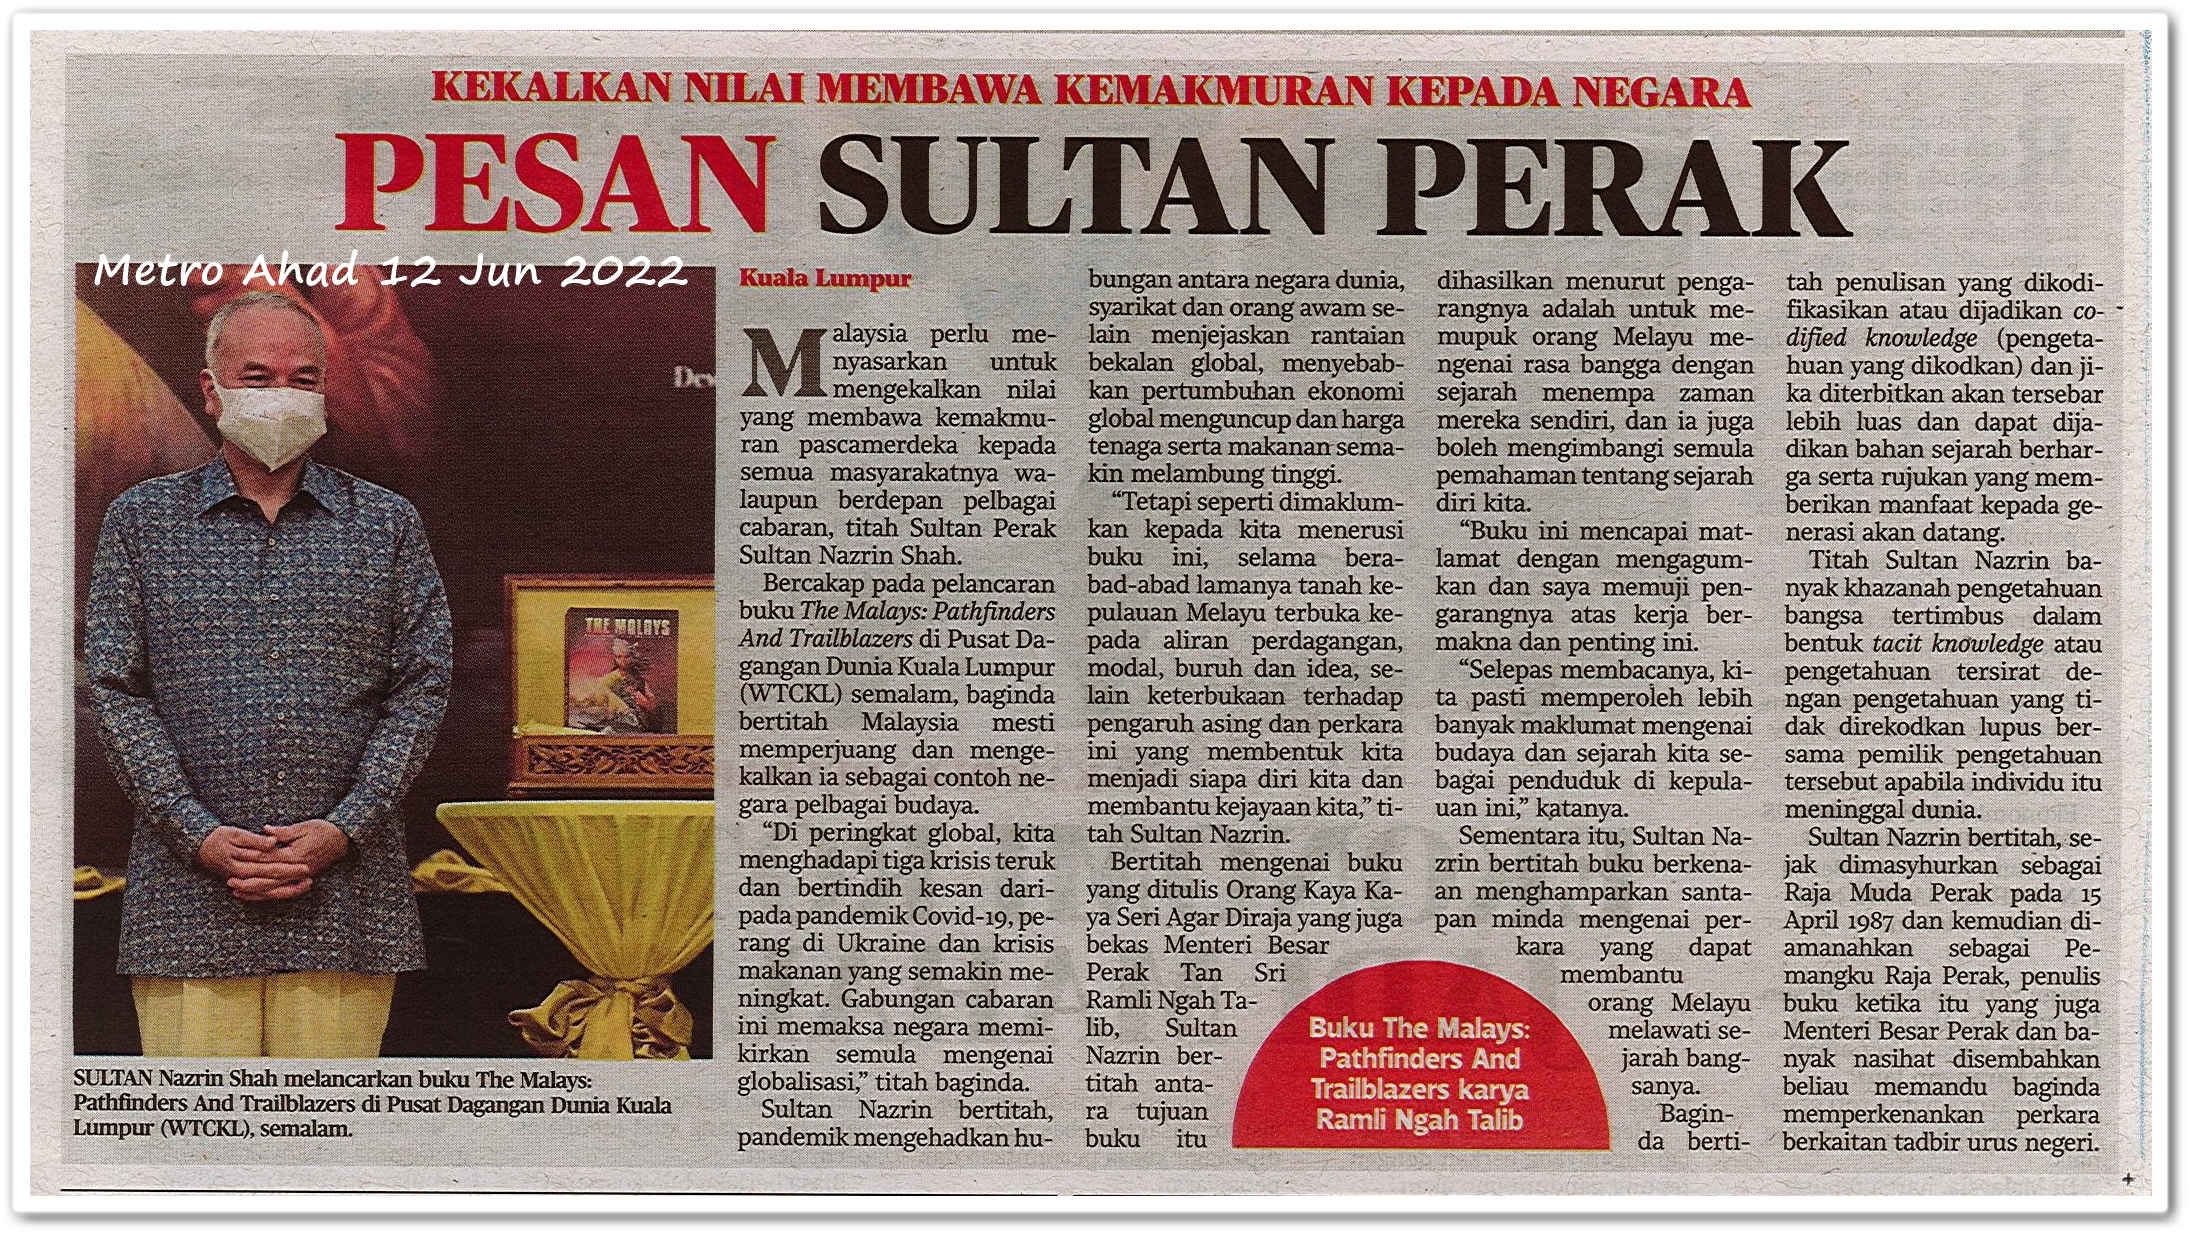 Pesan Sultan Perak ; Kekalkan nilai membawa kemakmuran kepada negara - Keratan akhbar Metro Ahad 12 Jun 2022